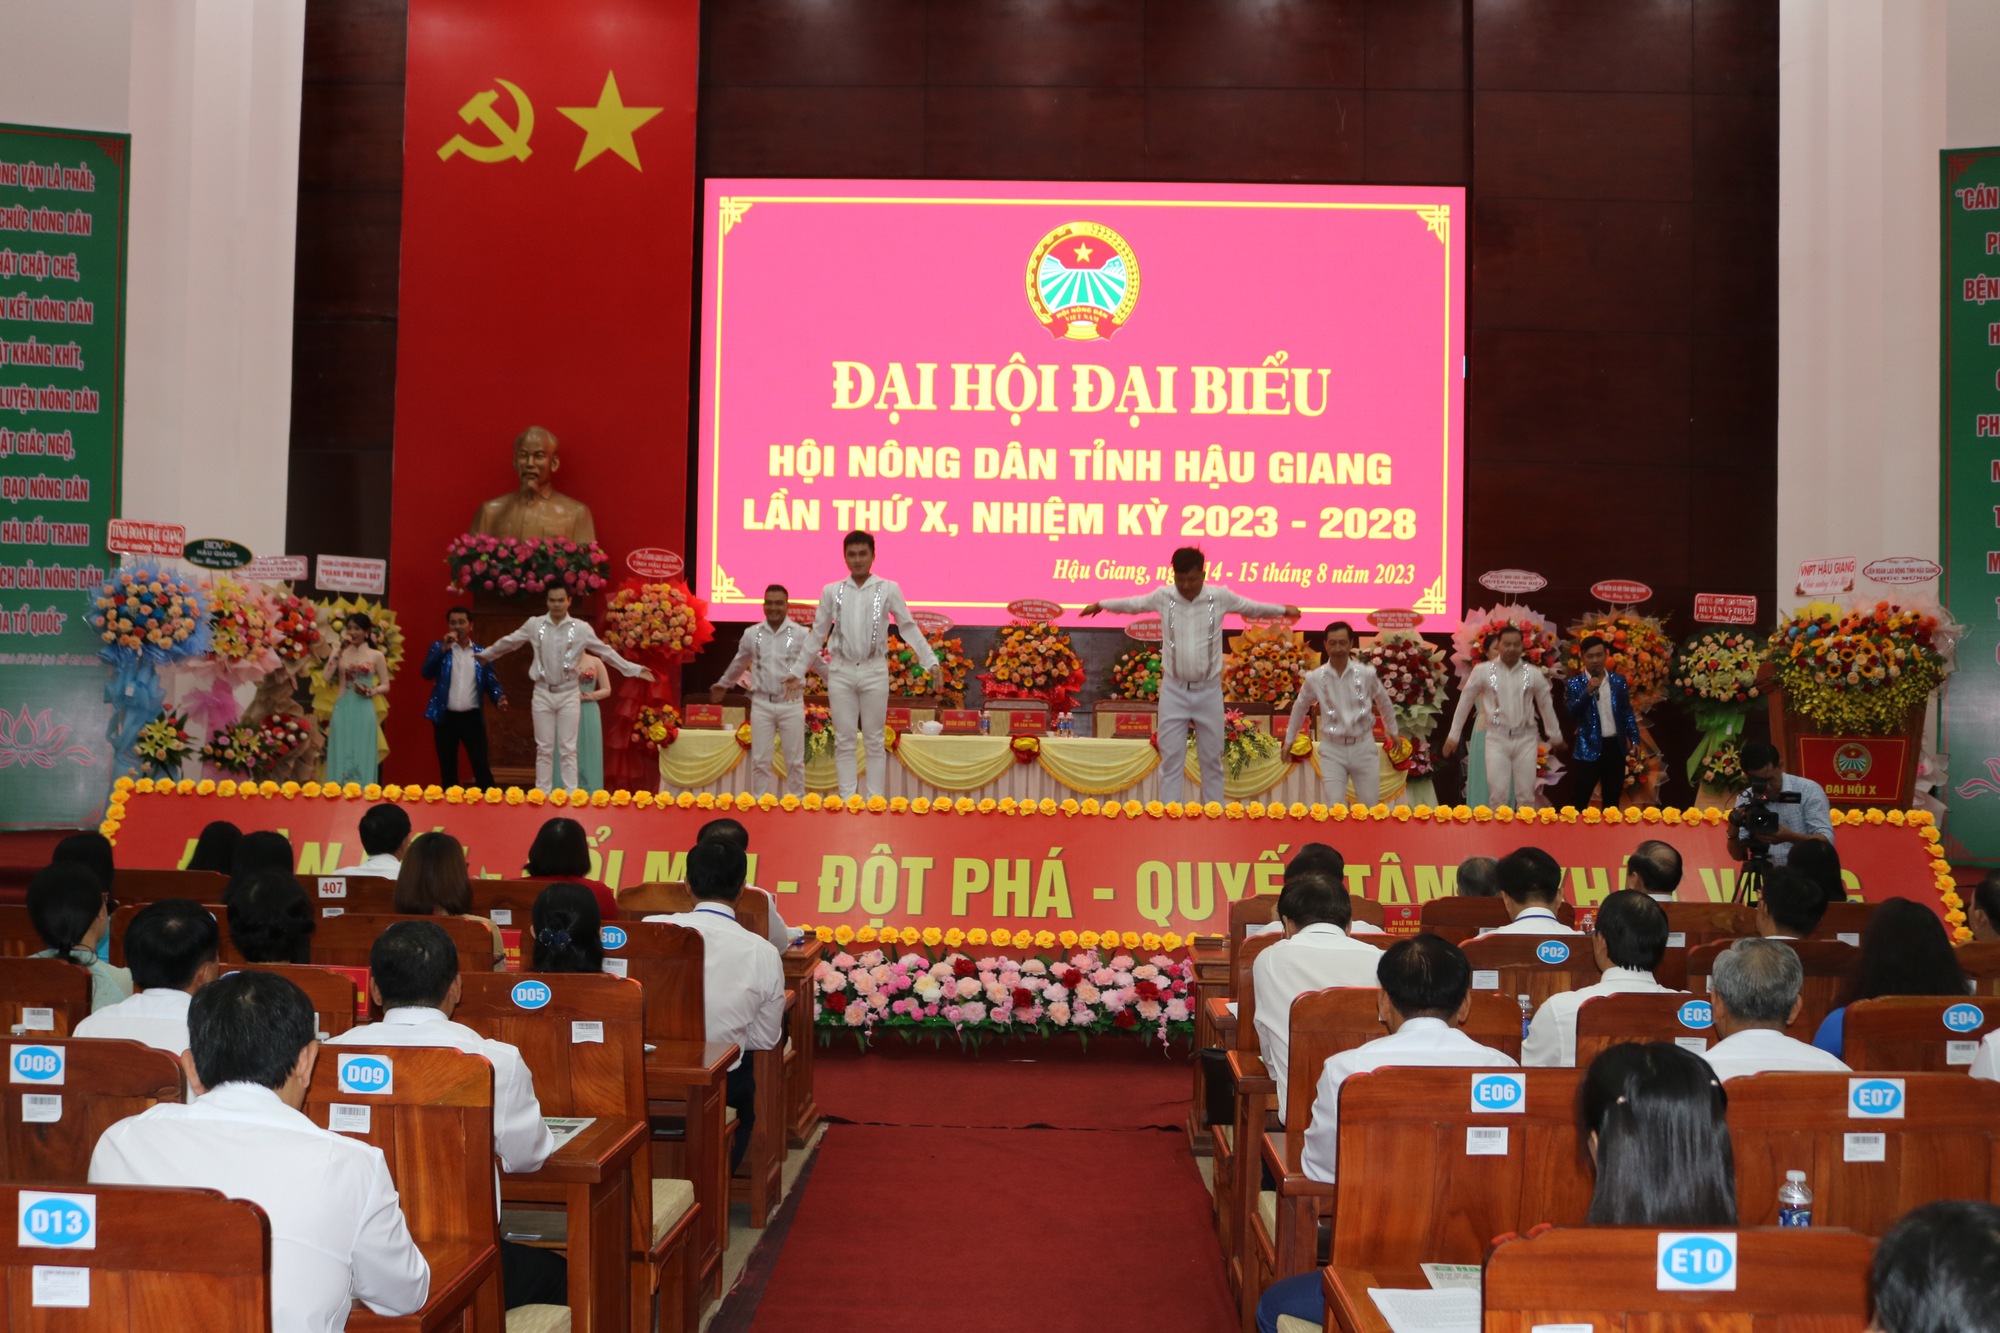 Phó Chủ tịch HND VN Cao Xuân Thu Vân gợi mở 5 vấn đề để Đại hội đại biểu Hội ND Hậu Giang thảo luận - Ảnh 6.